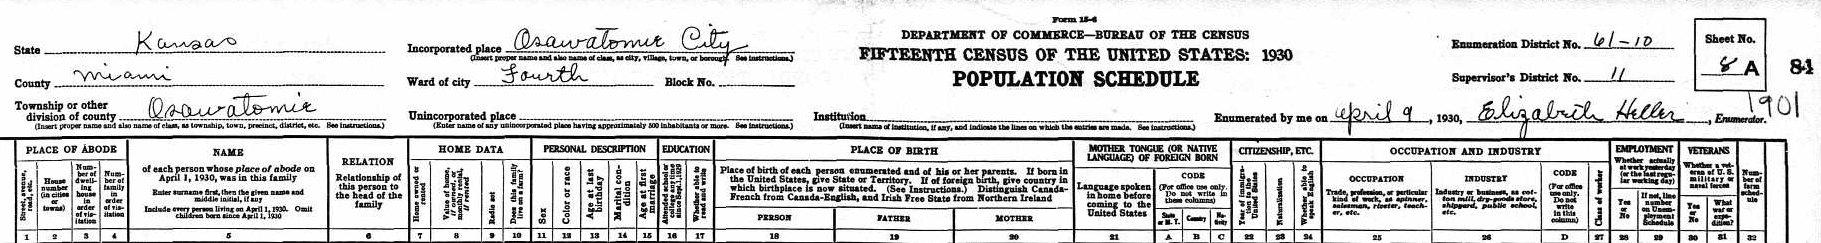 roy census